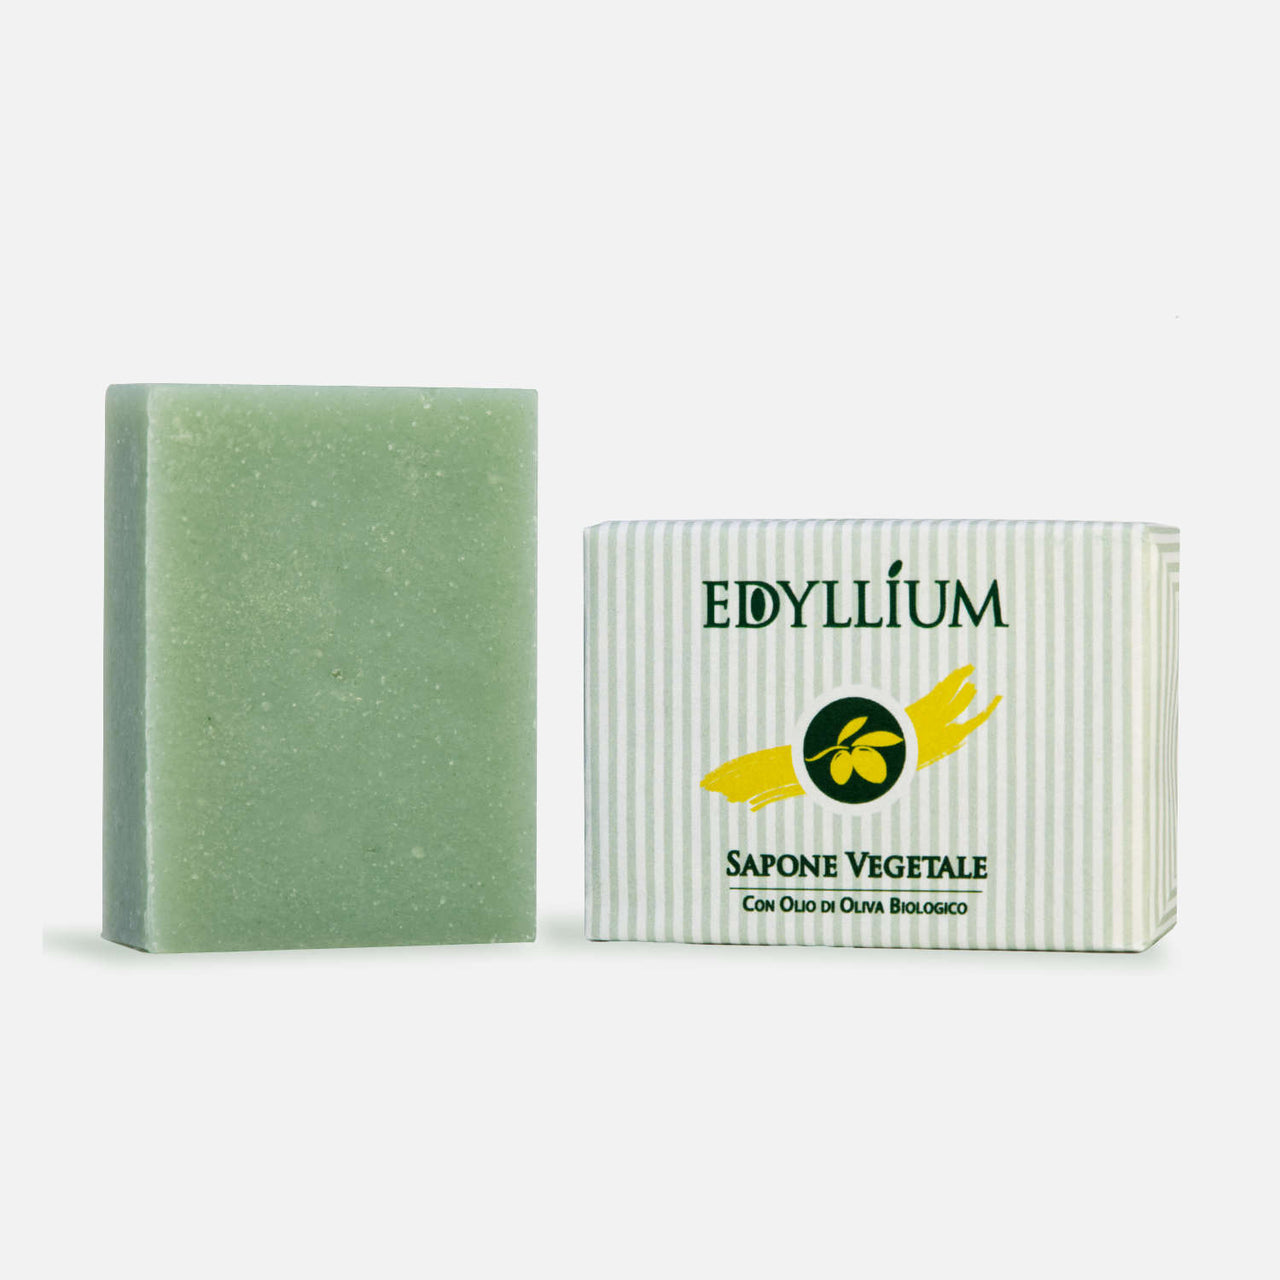 Edyllium sapone vegetale biologico - saponetta da 100 g